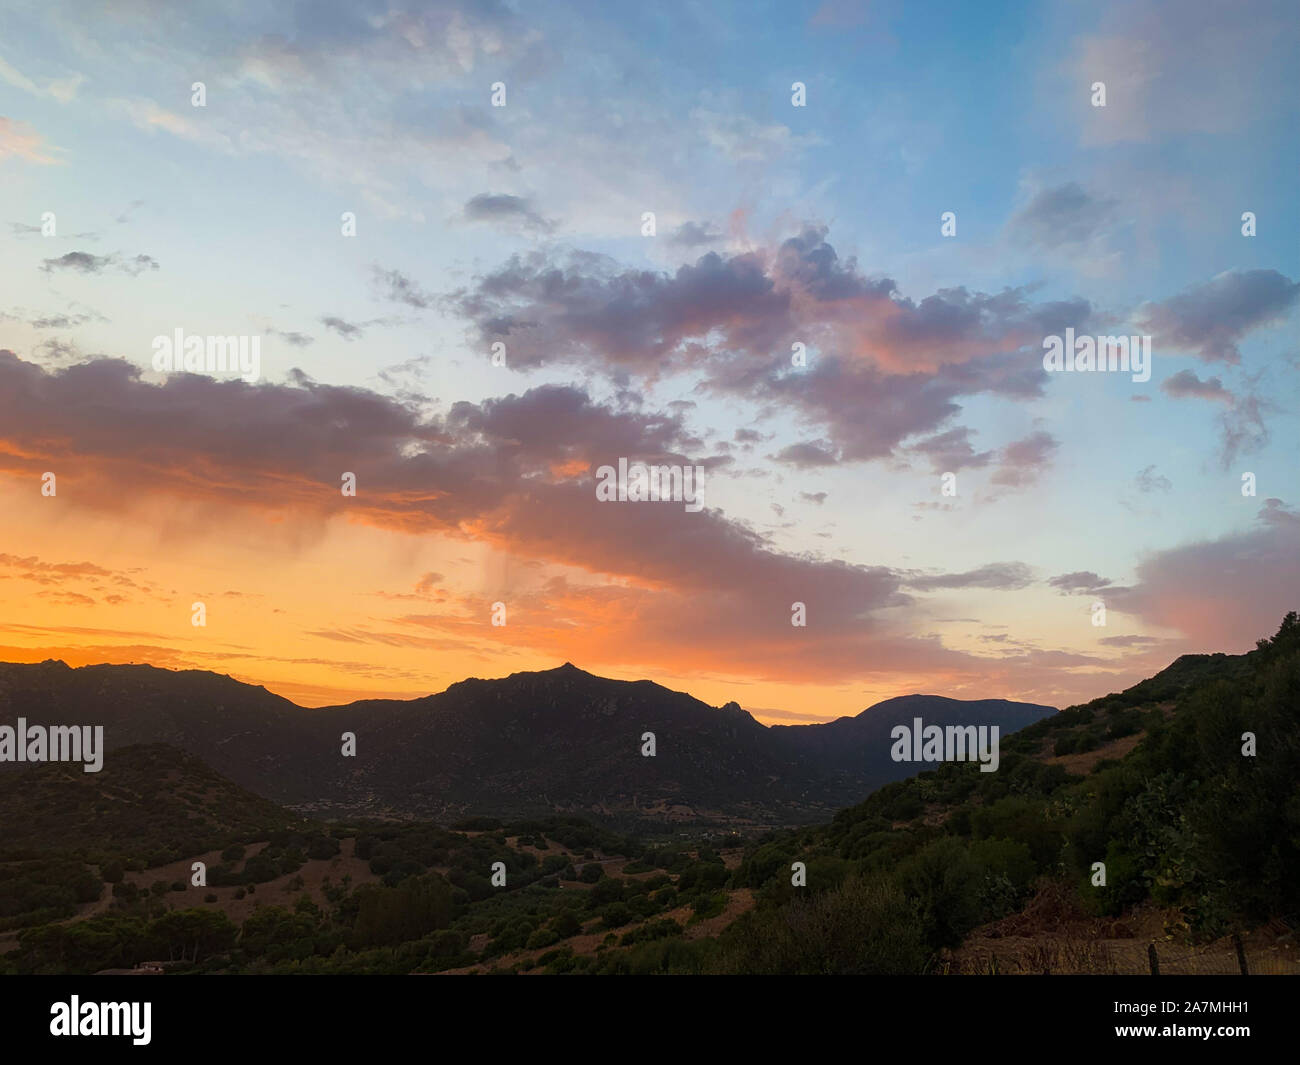 Capo Carbonara panorama al tramonto. È una famosa località turistica vicino a Villasimius, Sardegna, Italia. Foto Stock